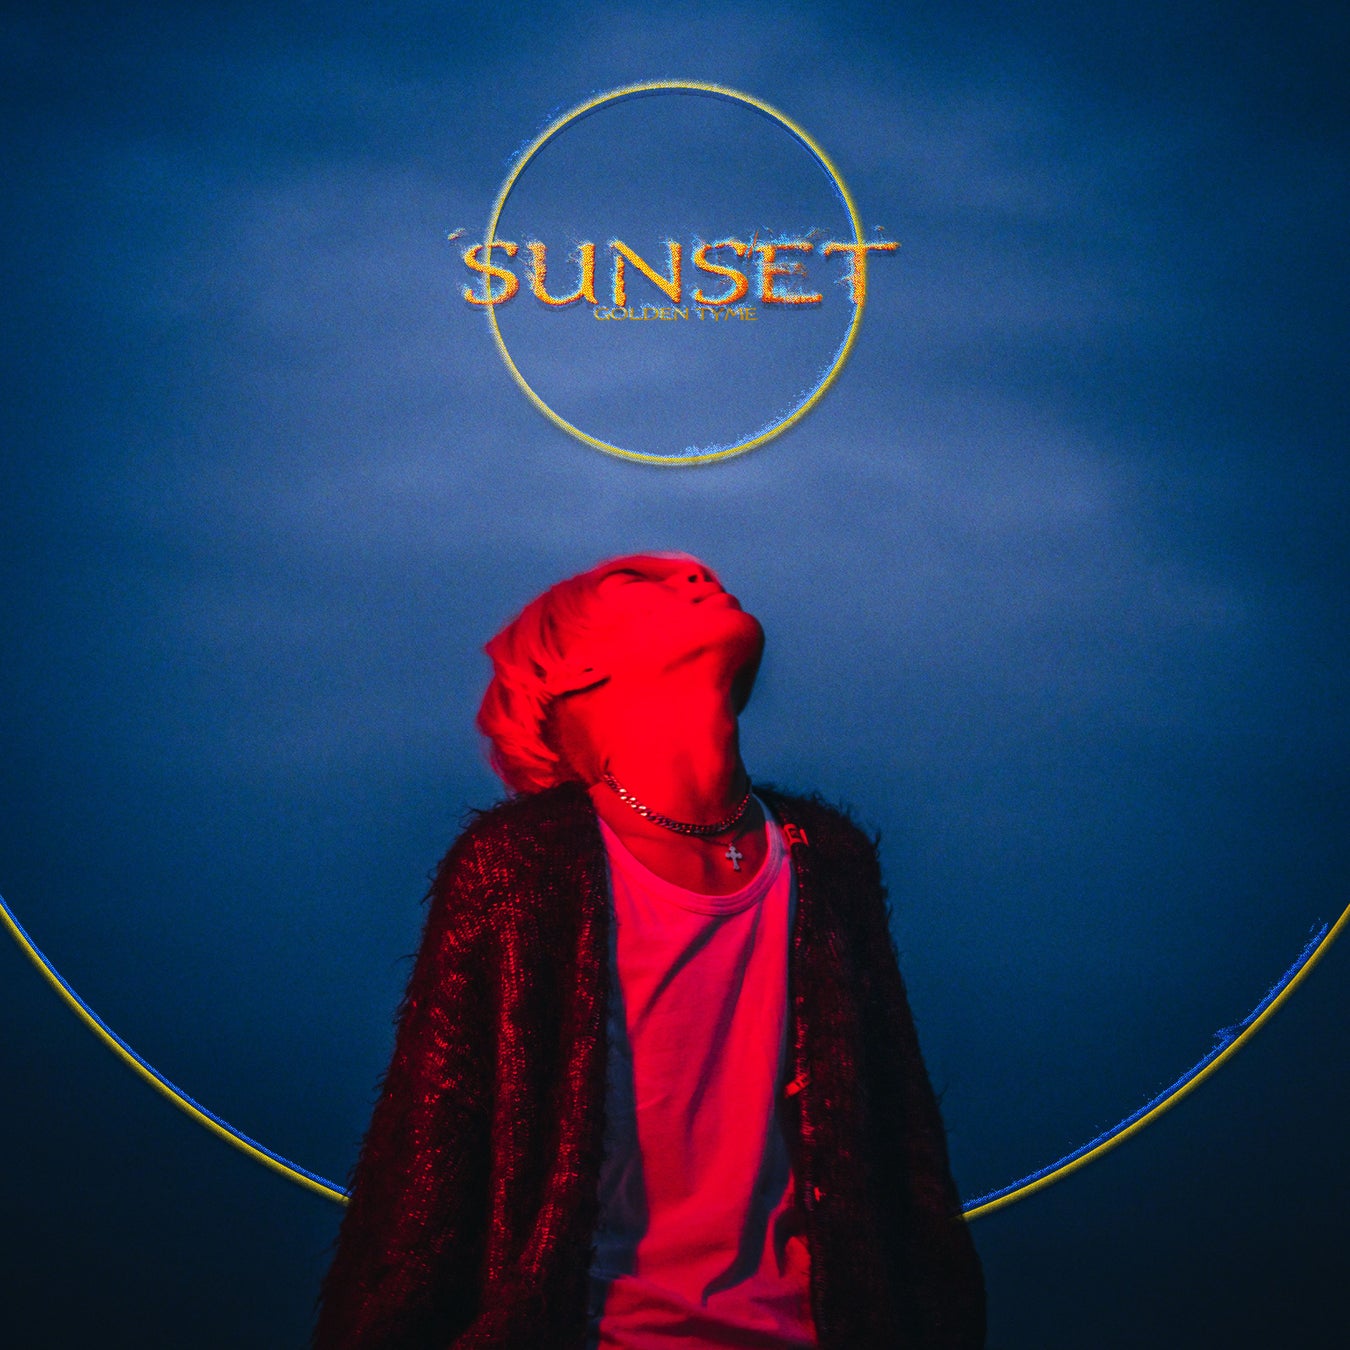 国境・ジャンル・性別、すべてのボーダーを越境する新世代アーティスト、GOLDEN TYME。デビューEP「SUNSET」を11月4日にリリース。